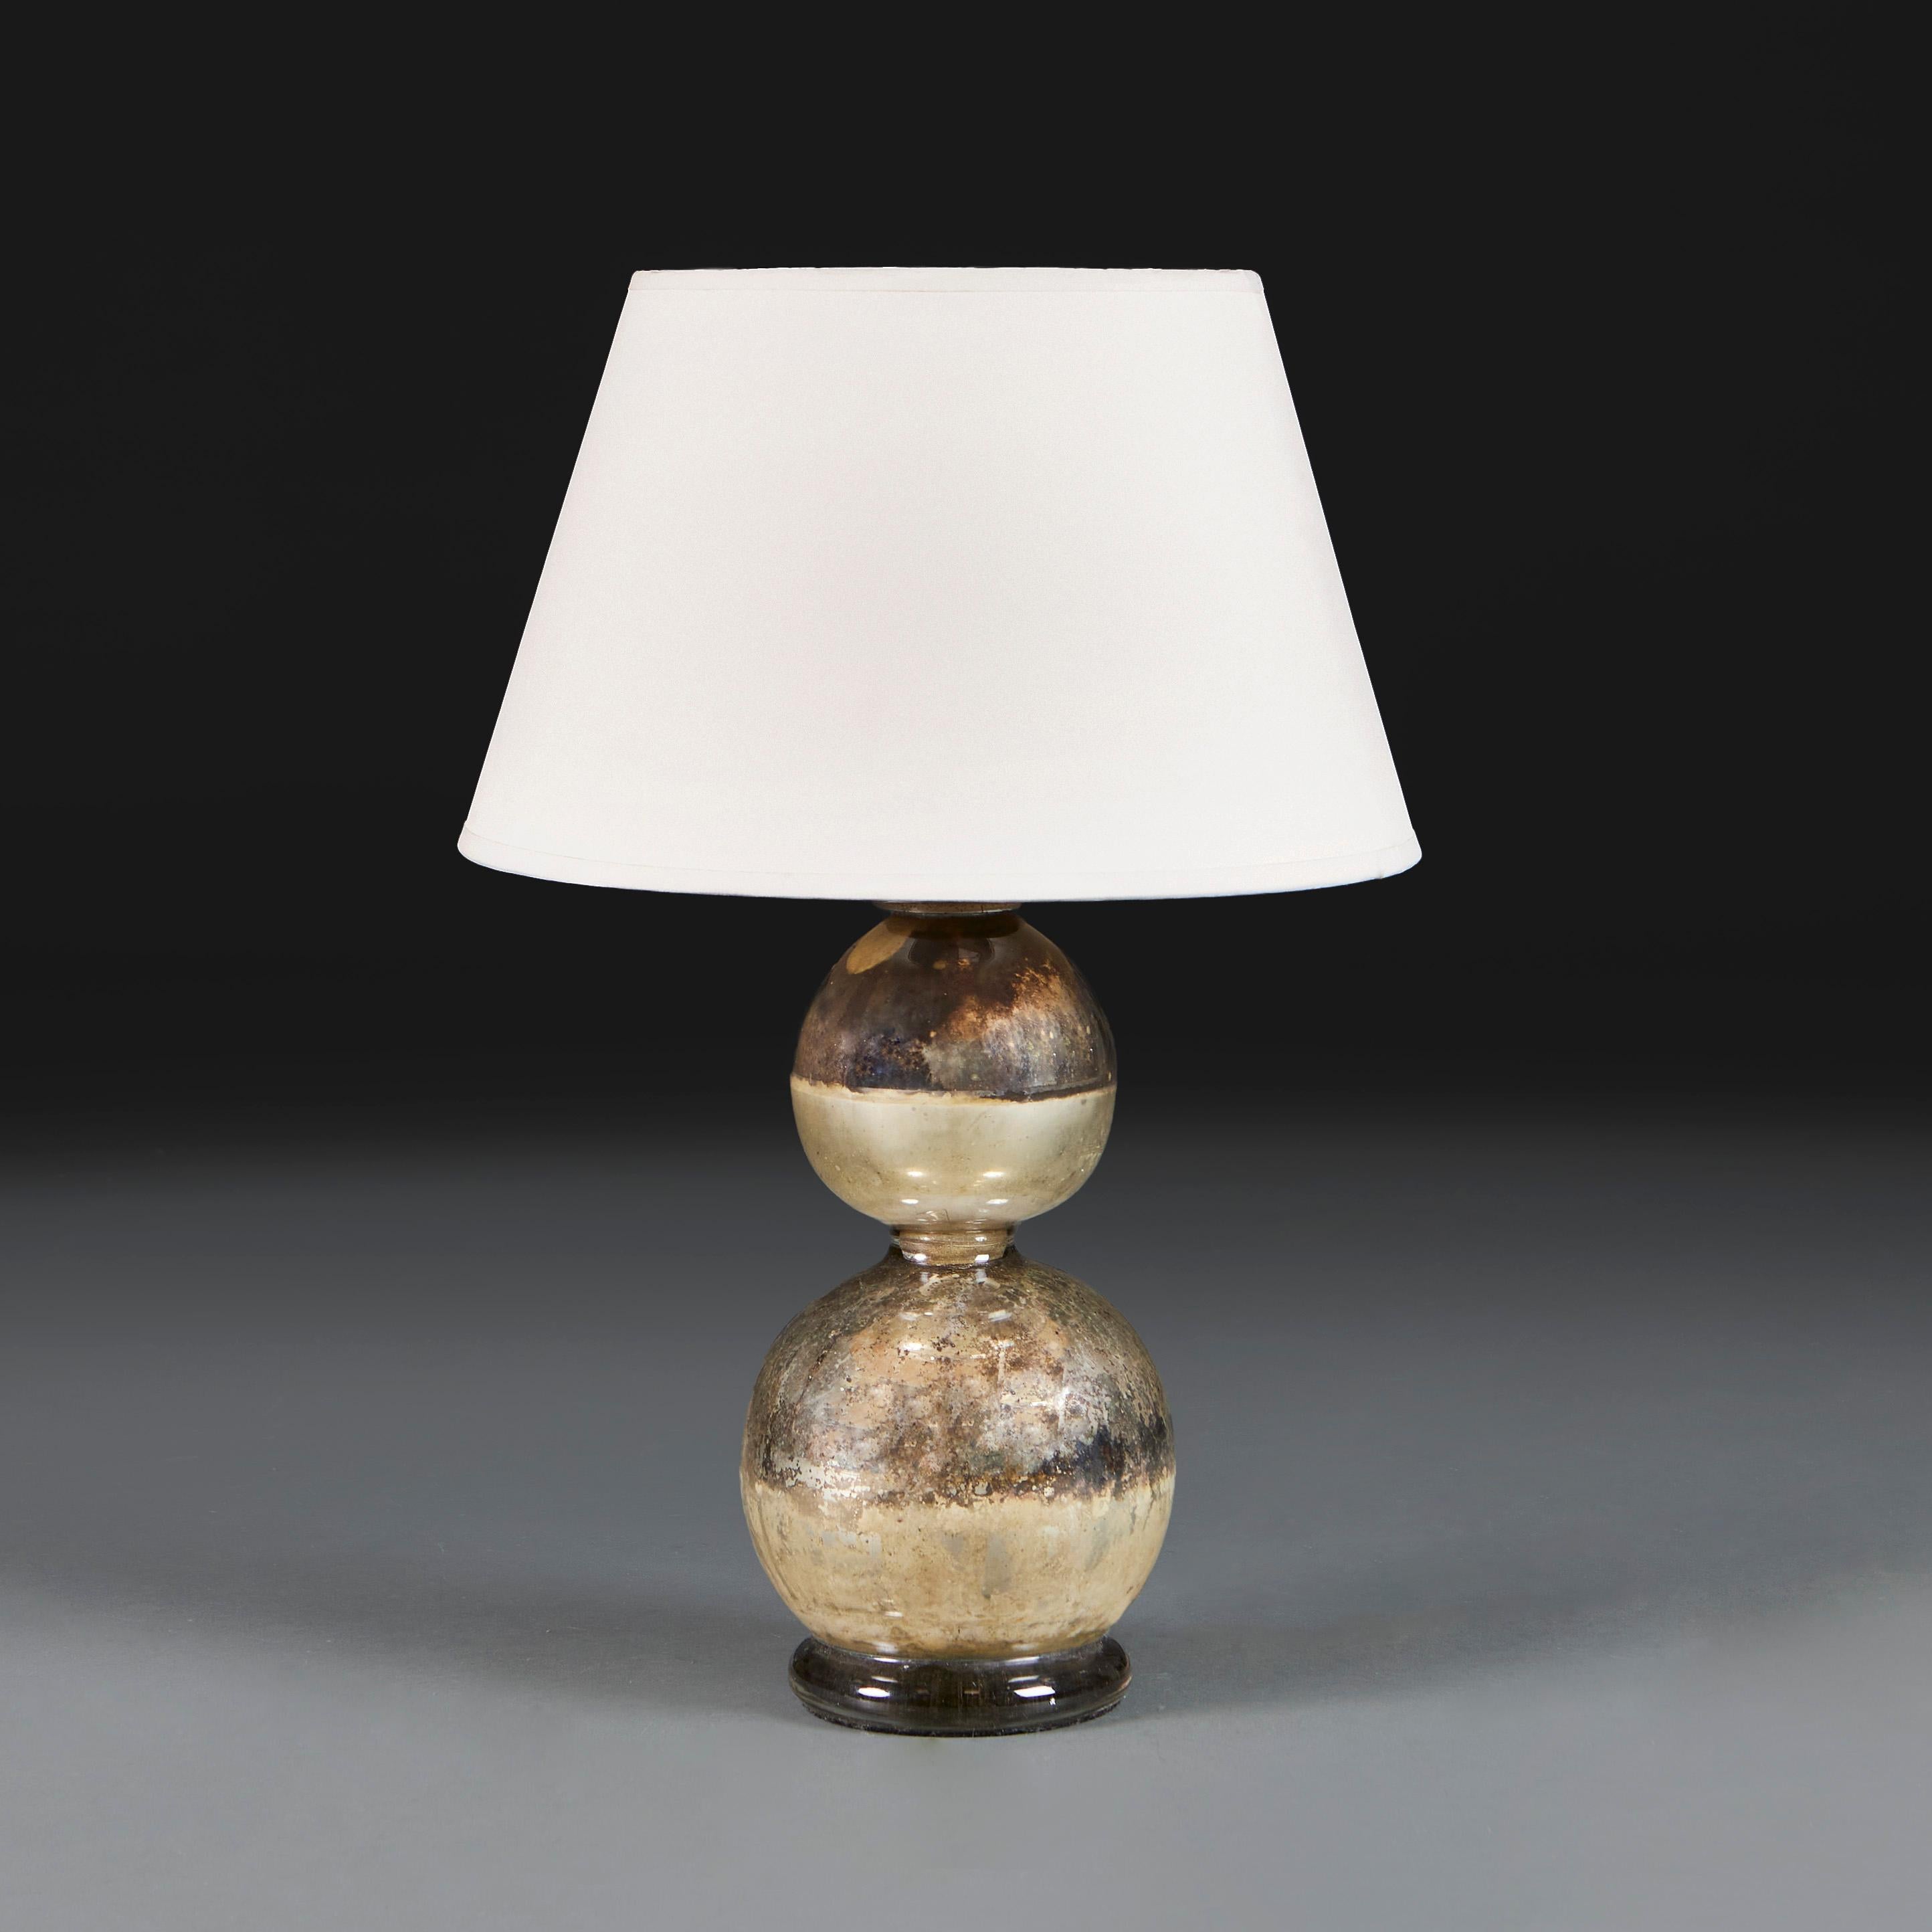 Frankreich, um 1920

Eine französische Quecksilber-Kunstglasvase des zwanzigsten Jahrhunderts in Form einer doppelten Kalebasse, jetzt als Lampe umfunktioniert. 

Höhe der Vase 35.00cm

Durchmesser 16.00cm

Fotografiert mit einem Lampenschirm aus